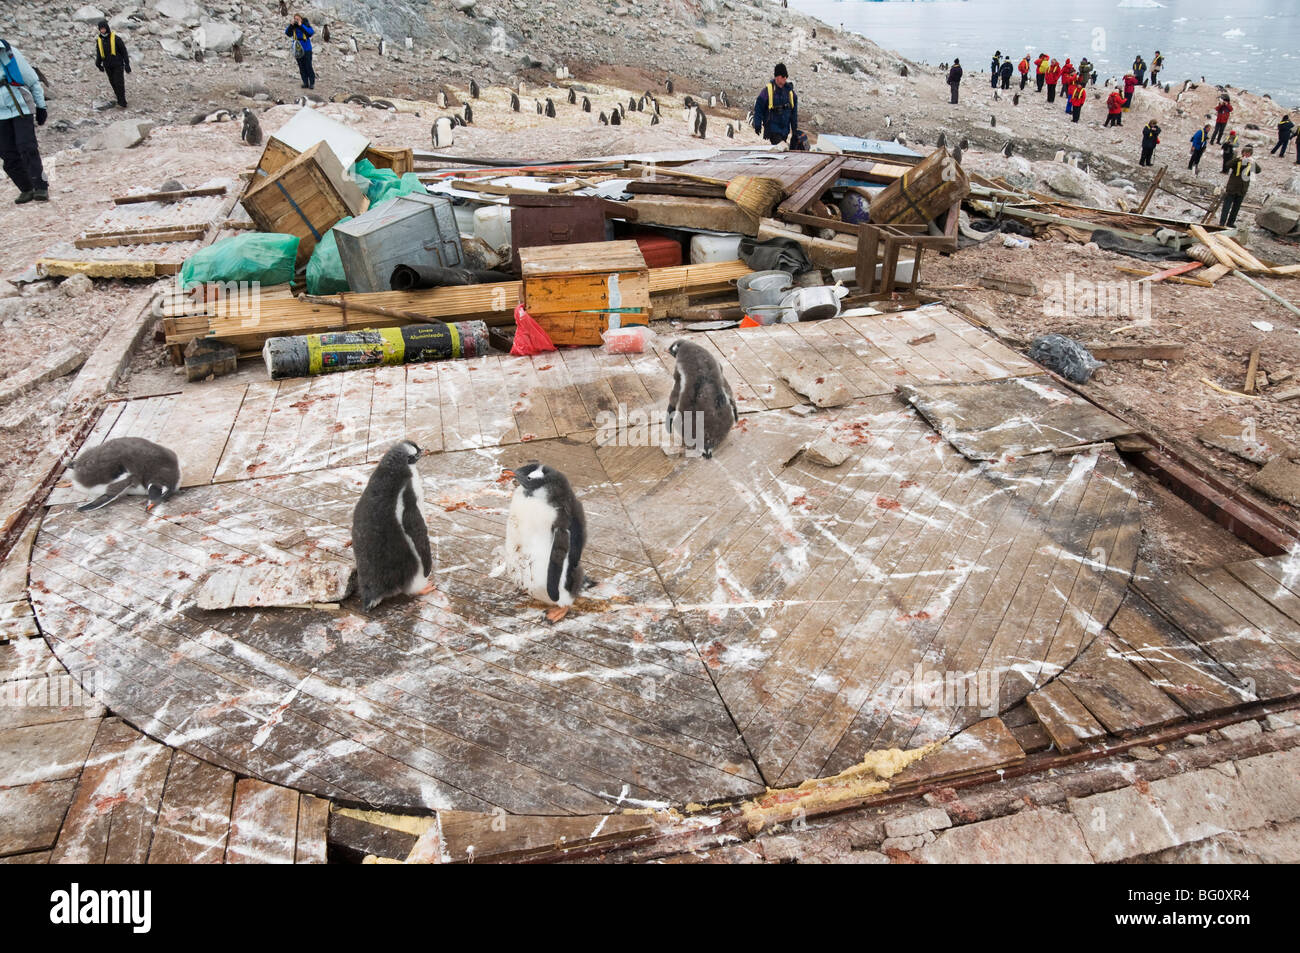 Manchots, reste d'Argentine hut détruit par grands vents, Neko Harbour, péninsule Antarctique, l'Antarctique, régions polaires Banque D'Images